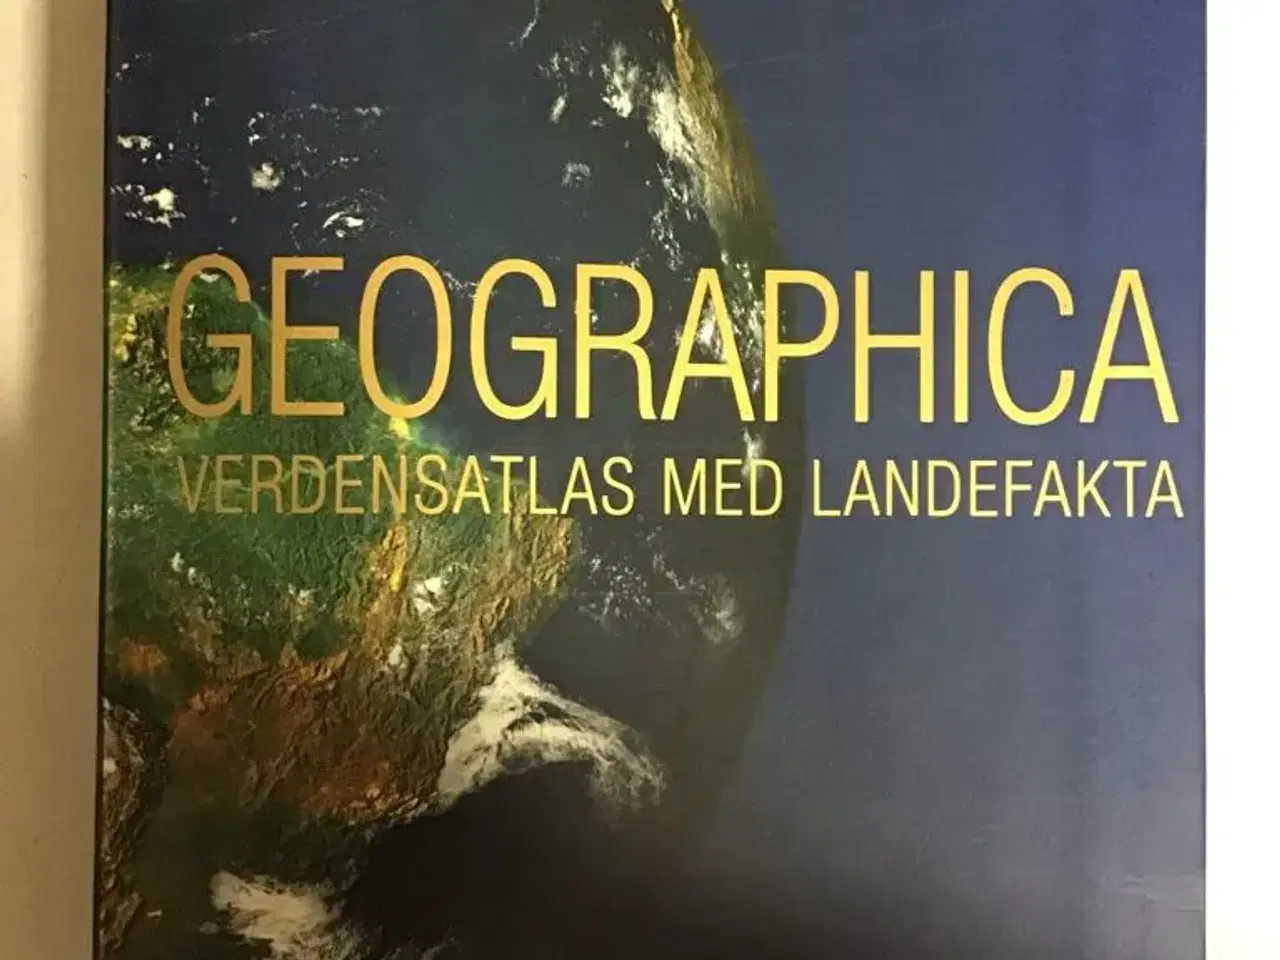 Billede 1 - Geographica verdensatlas